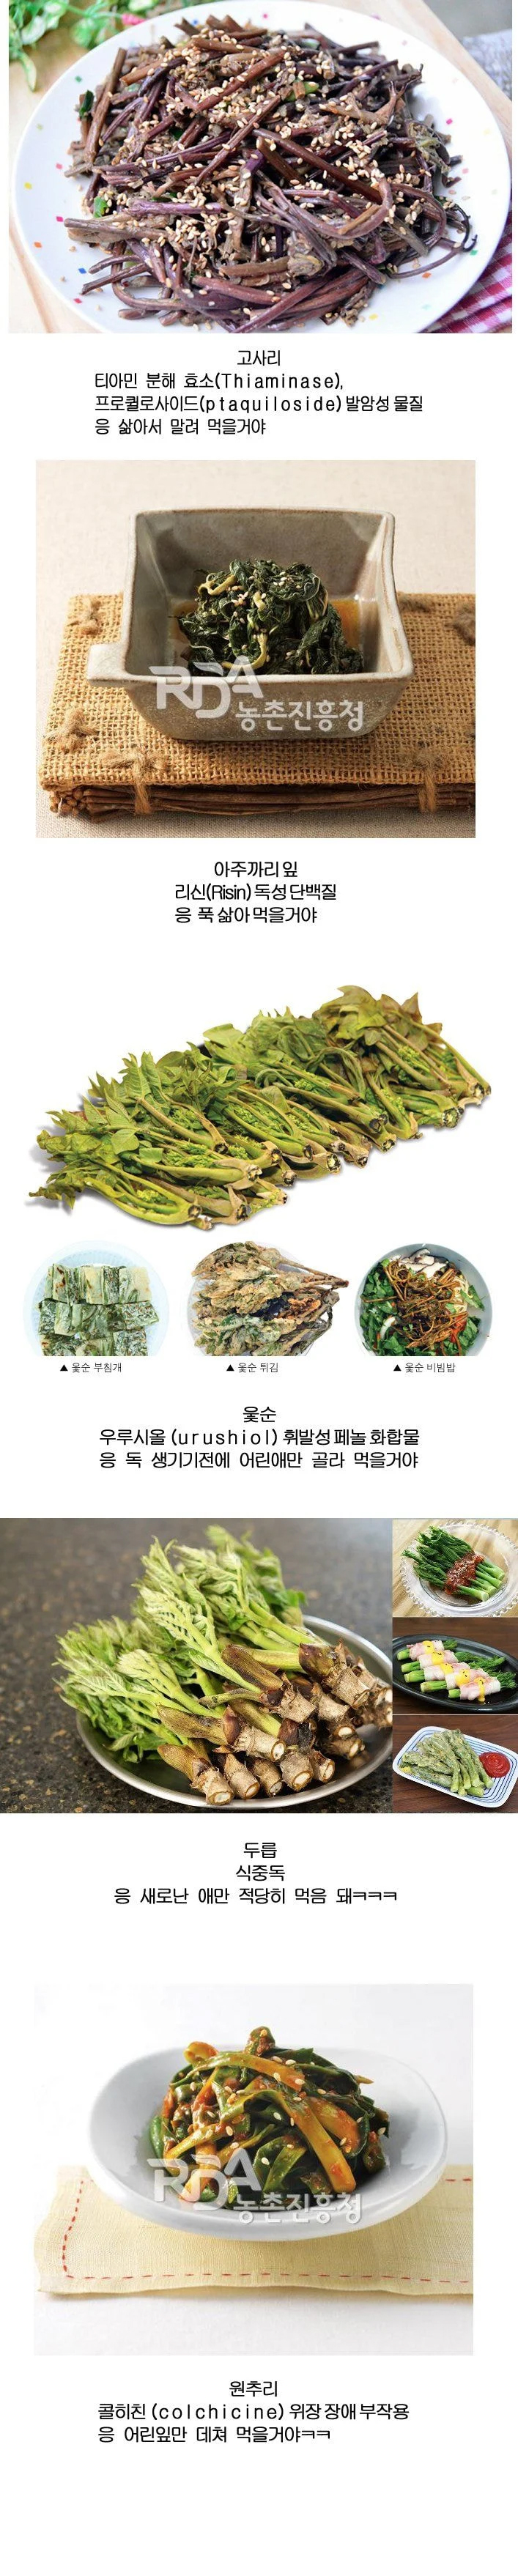 썸네일-한국인들이 자주 먹는 위험한 식물들-이미지